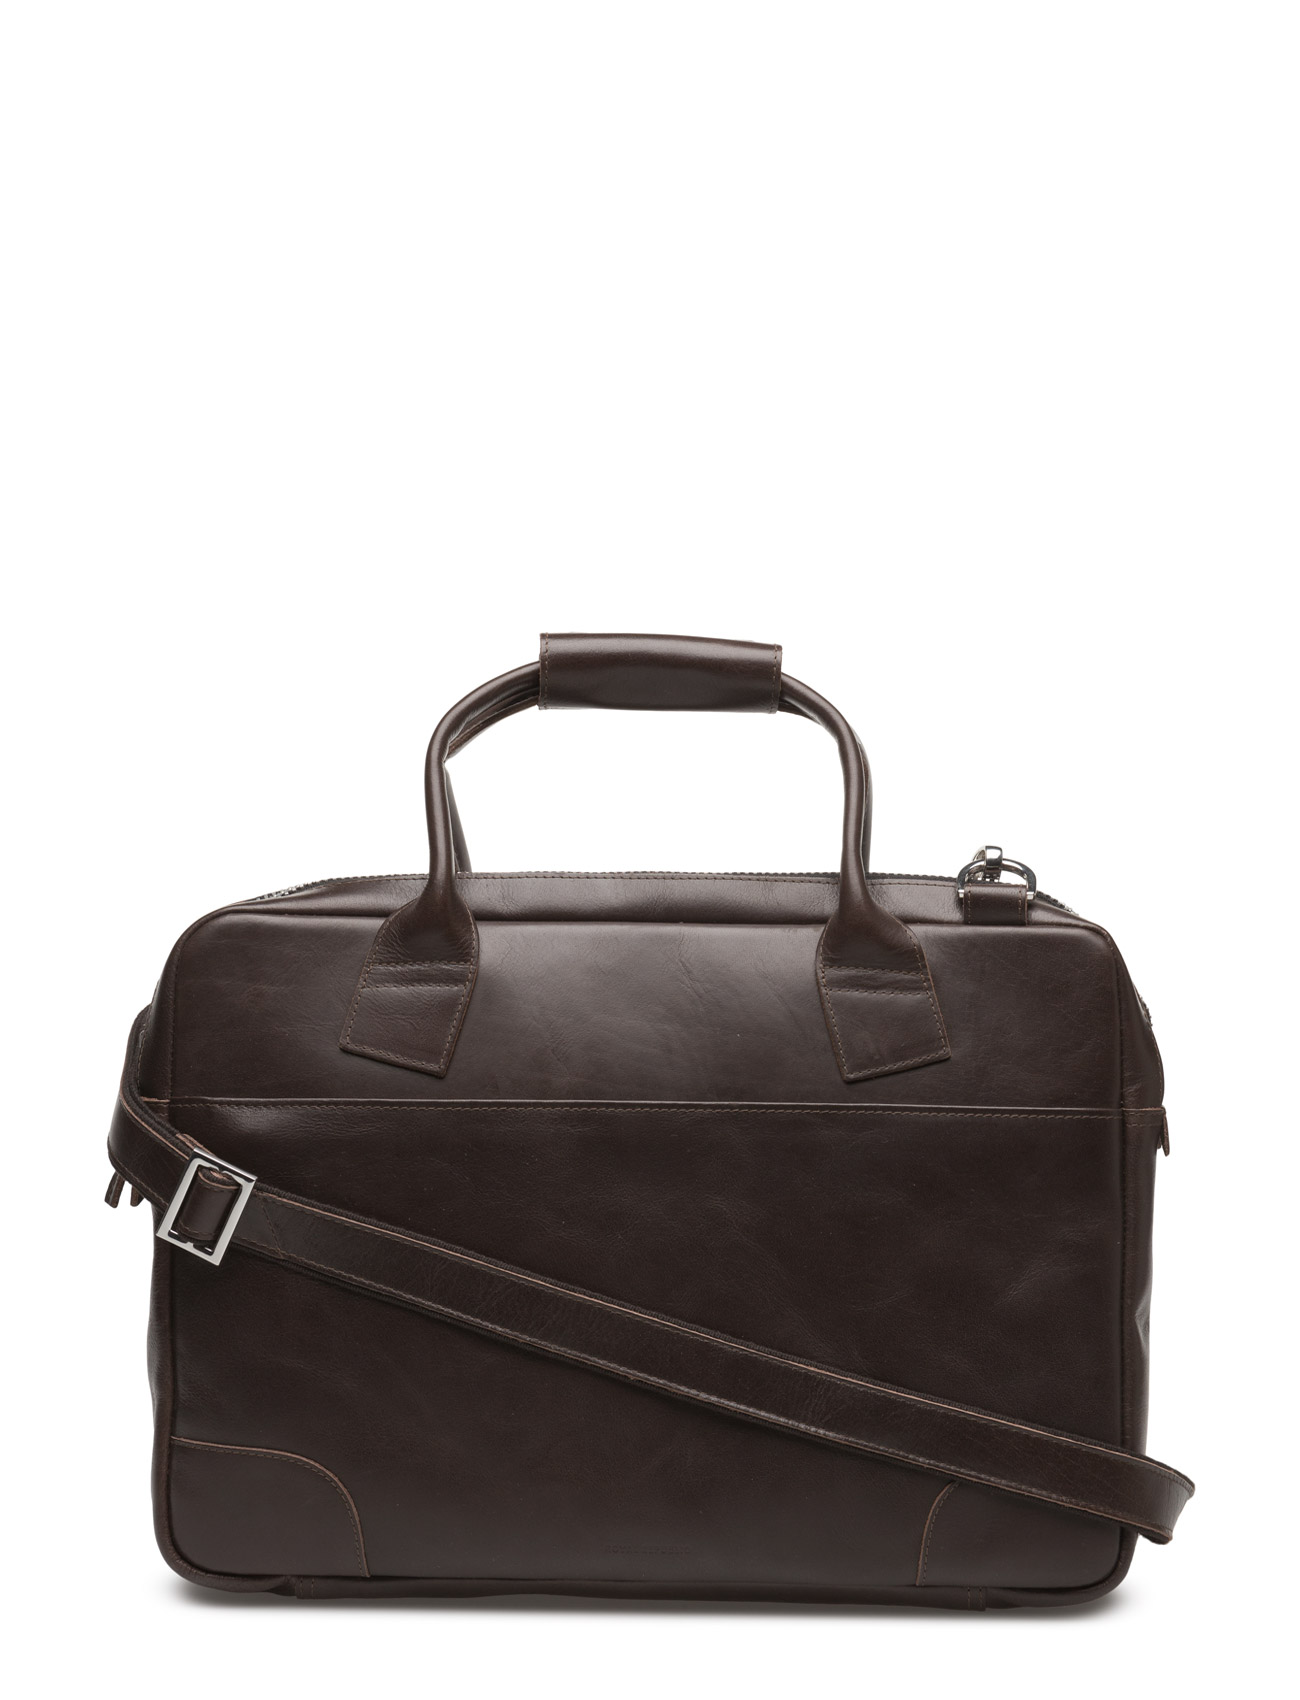 Royal RepubliQ - Nano big zip bag leather - brown - 0